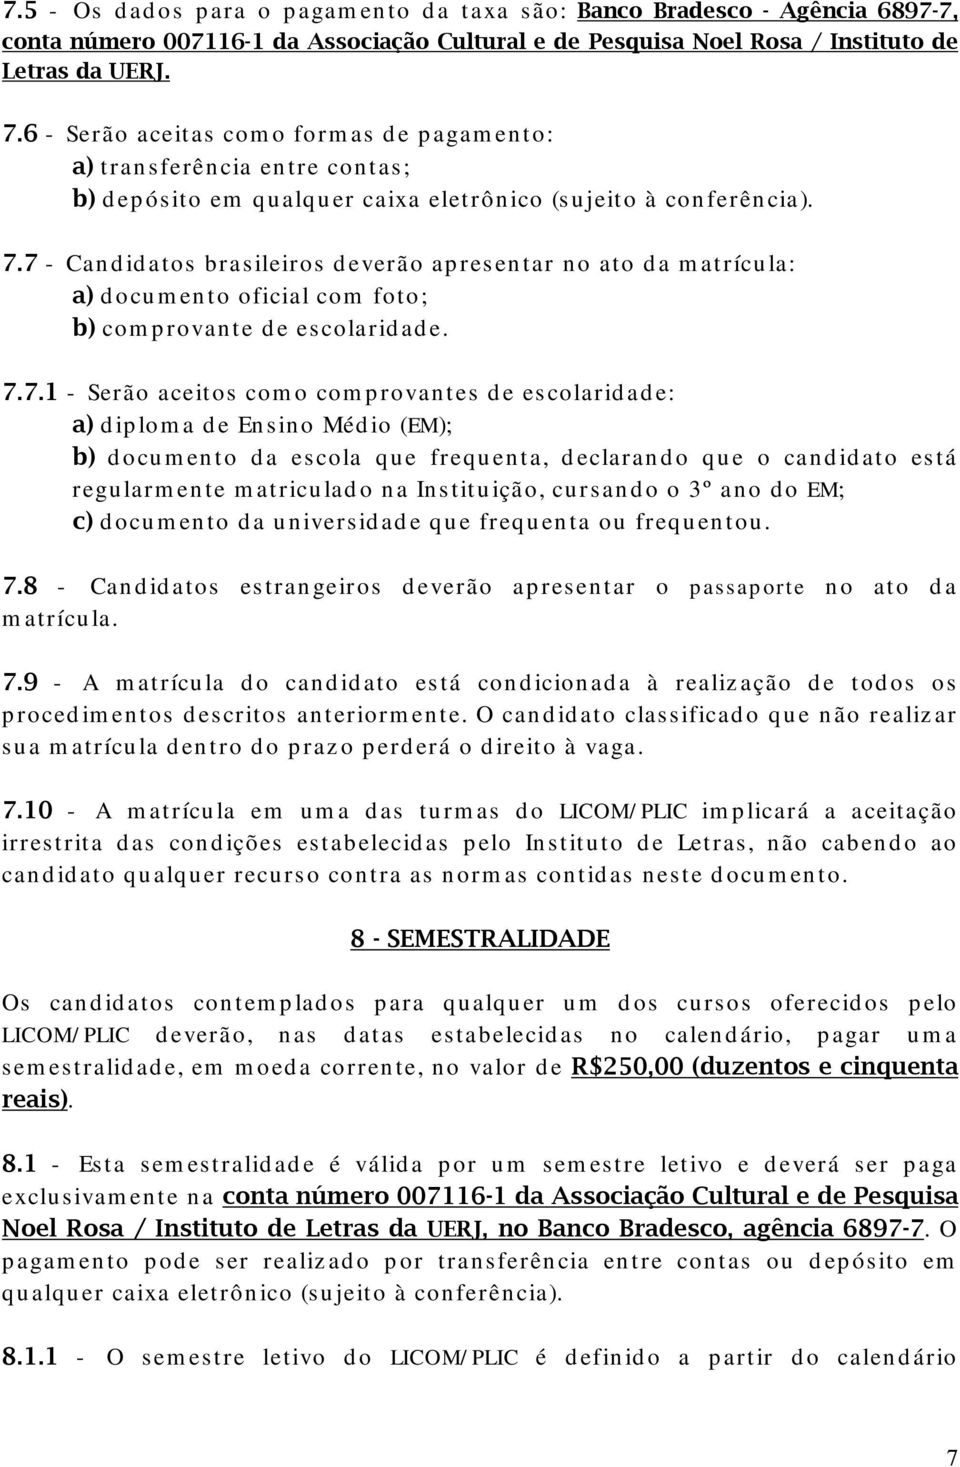 7 - Candidatos brasileiros deverão apresentar no ato da matrícula: a) documento oficial com foto; b) comprovante de escolaridade. 7.7.1 - Serão aceitos como comprovantes de escolaridade: a) diploma